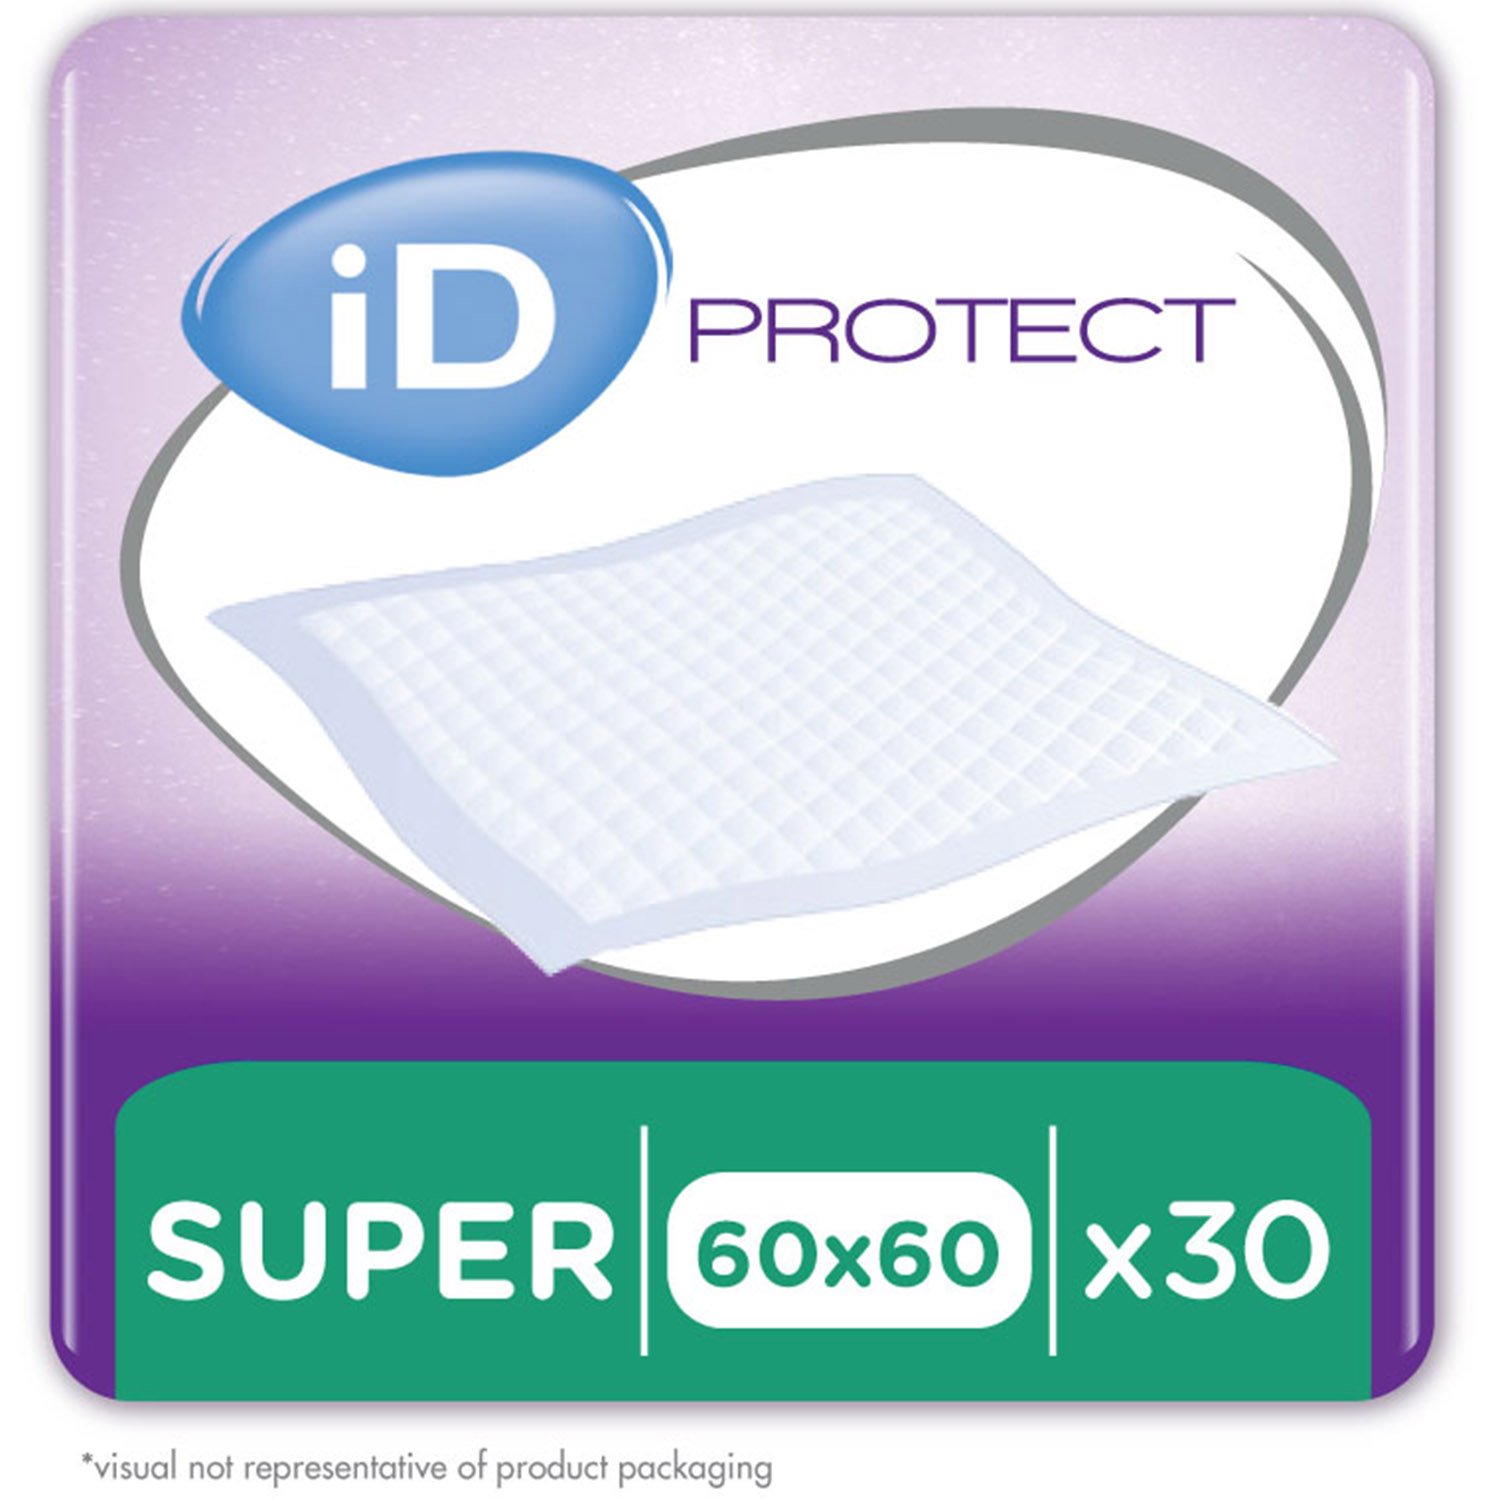 Одноразові гігієнічні пелюшки iD Protect Expert Super, 60x60 см, 30 шт. - фото 1